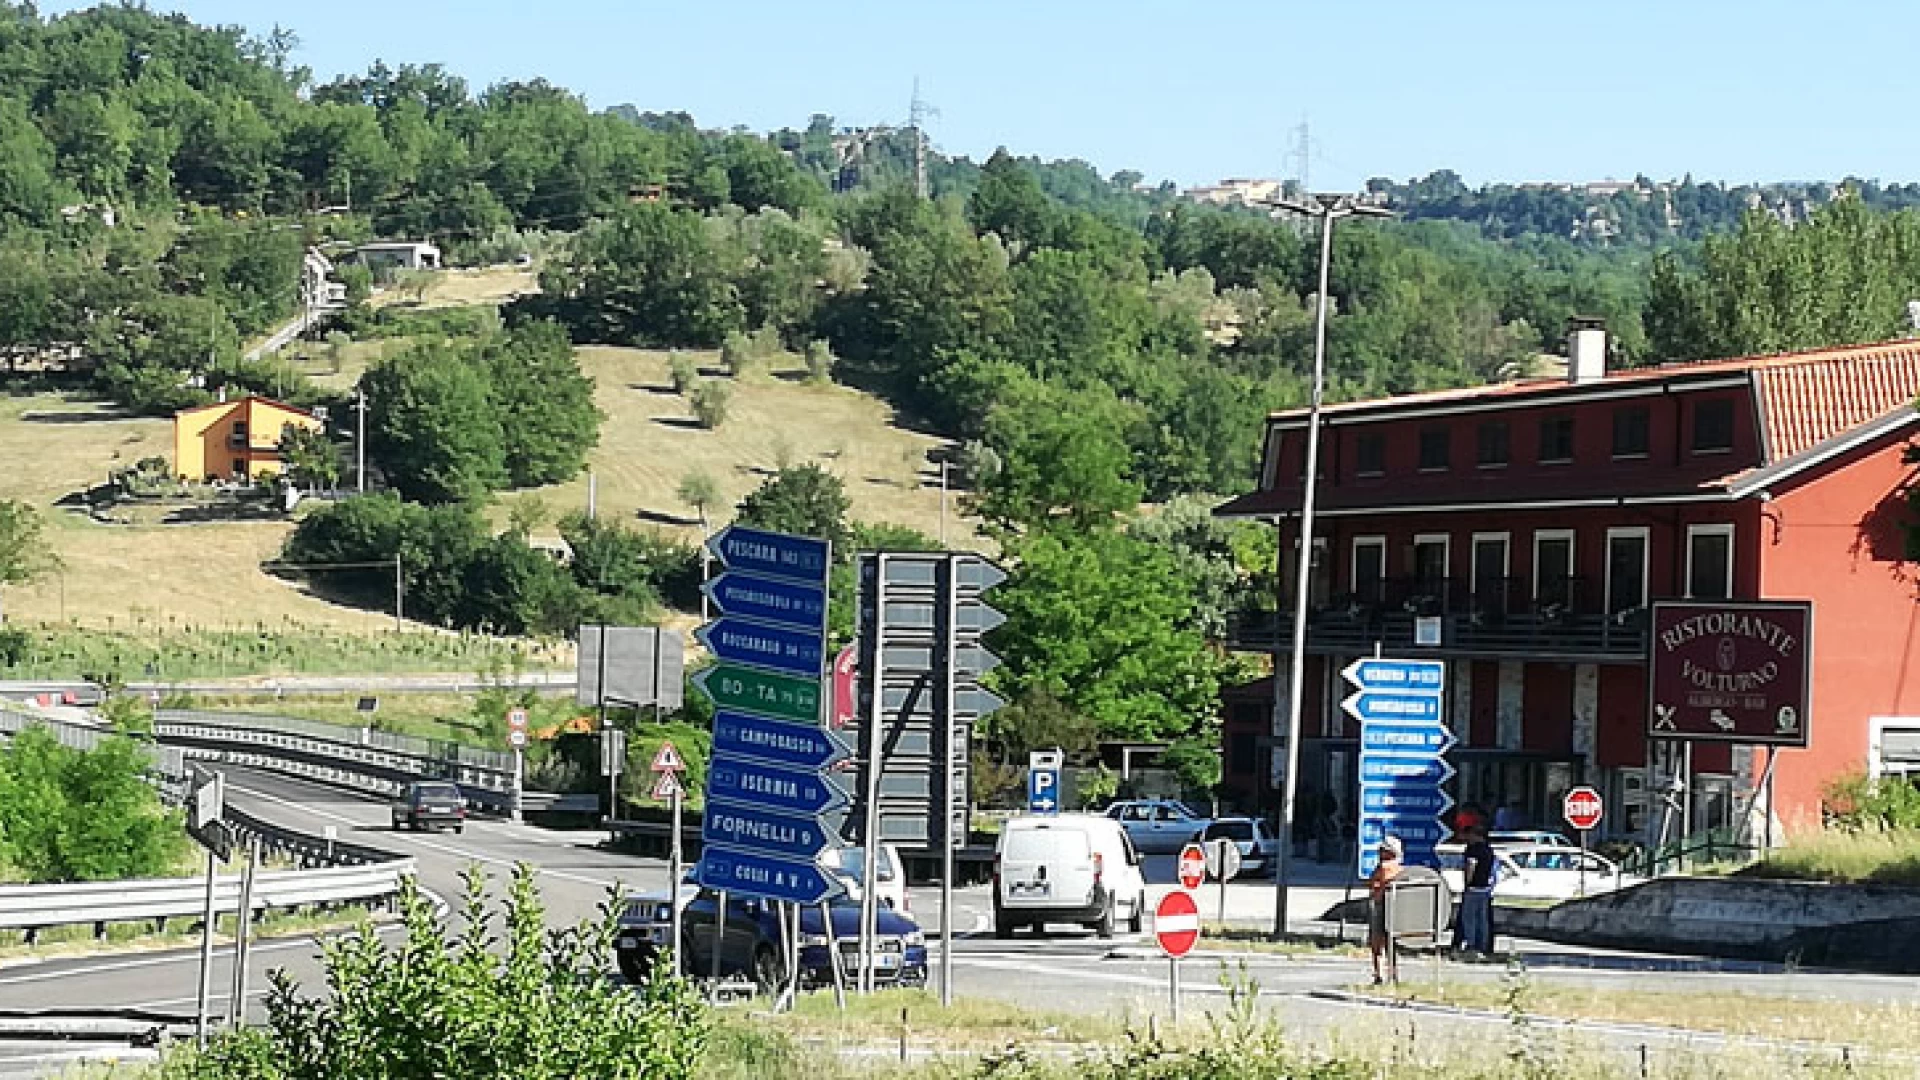 Colli a Volturno: scontro tra tre autovetture sulla statale 158. L’impatto questa mattina proprio all’ingresso del paese.